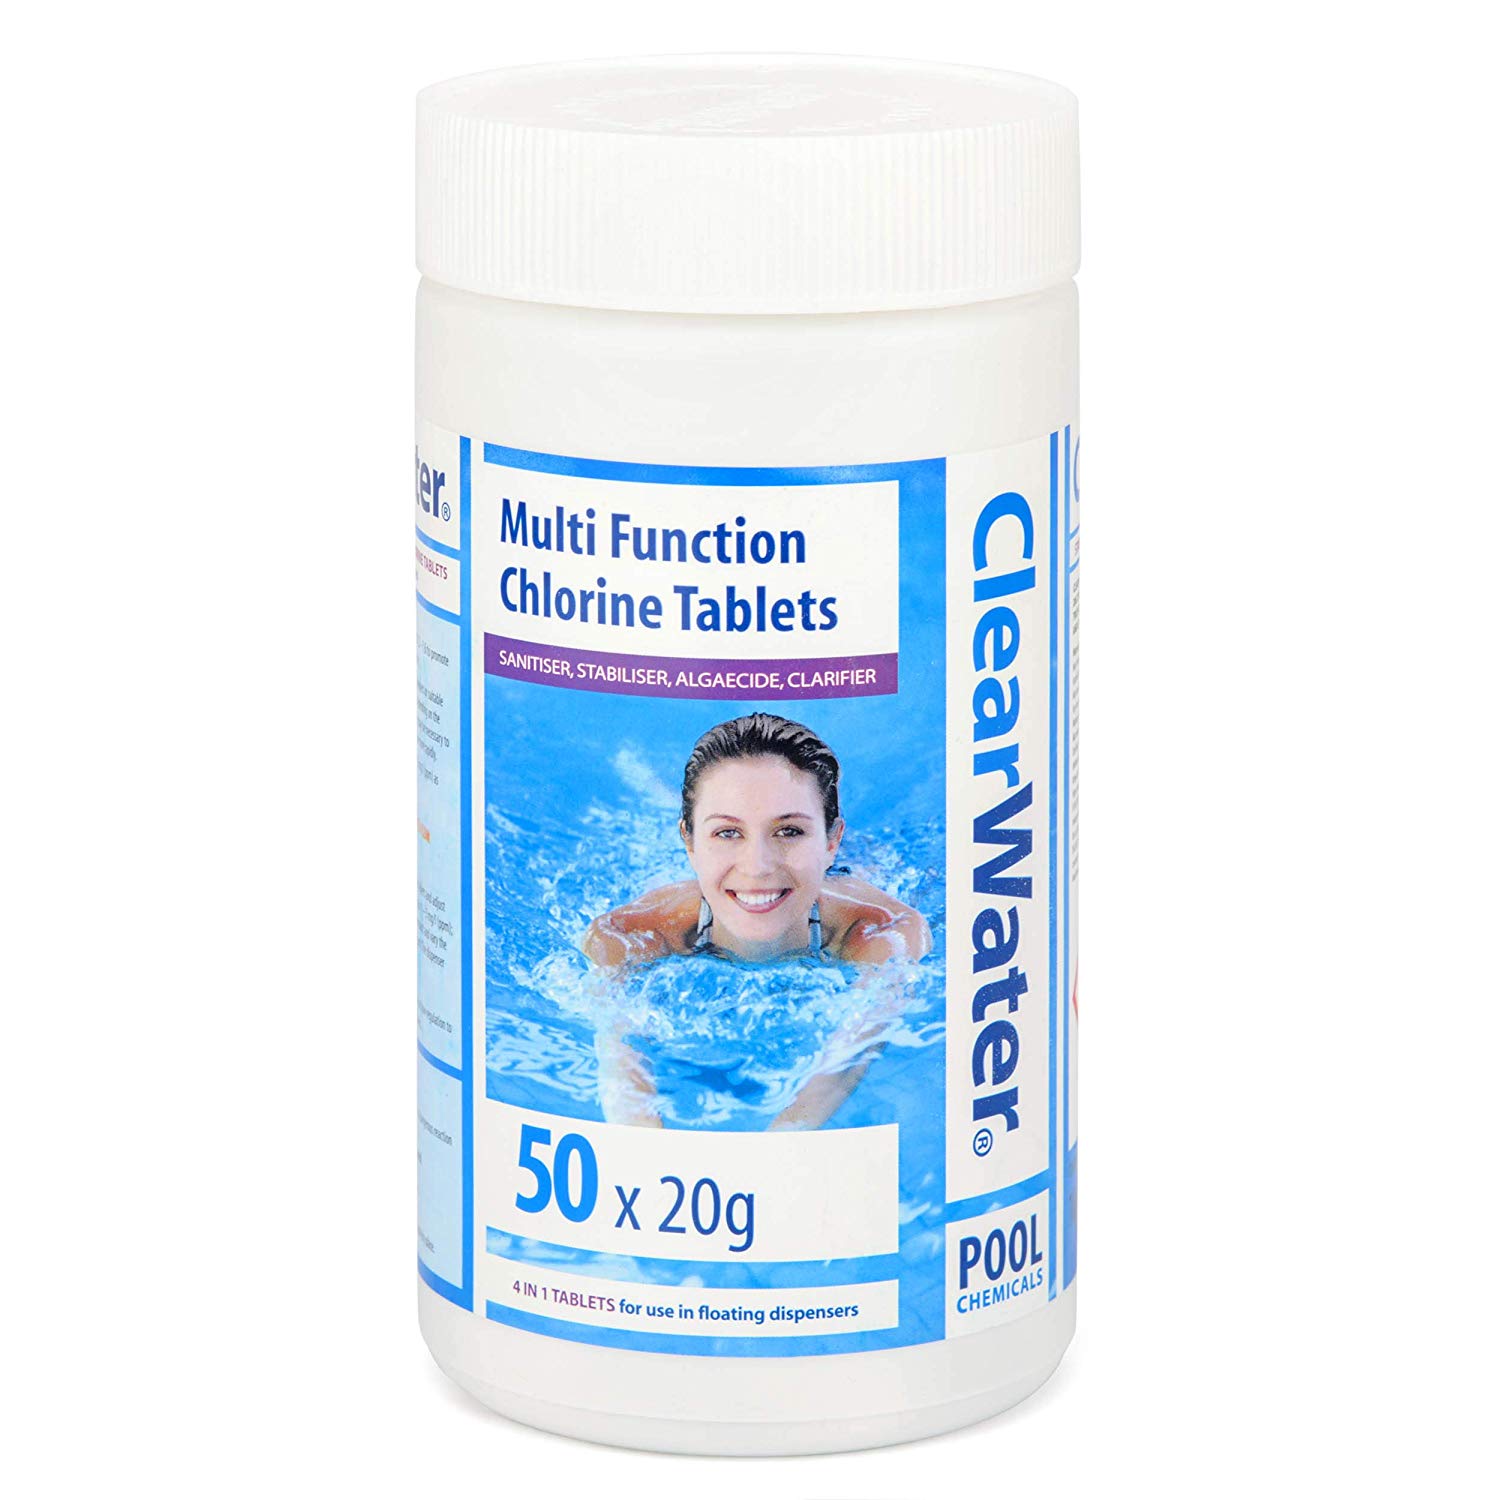 ClearwatergMultifunctionChlorineTabs kg